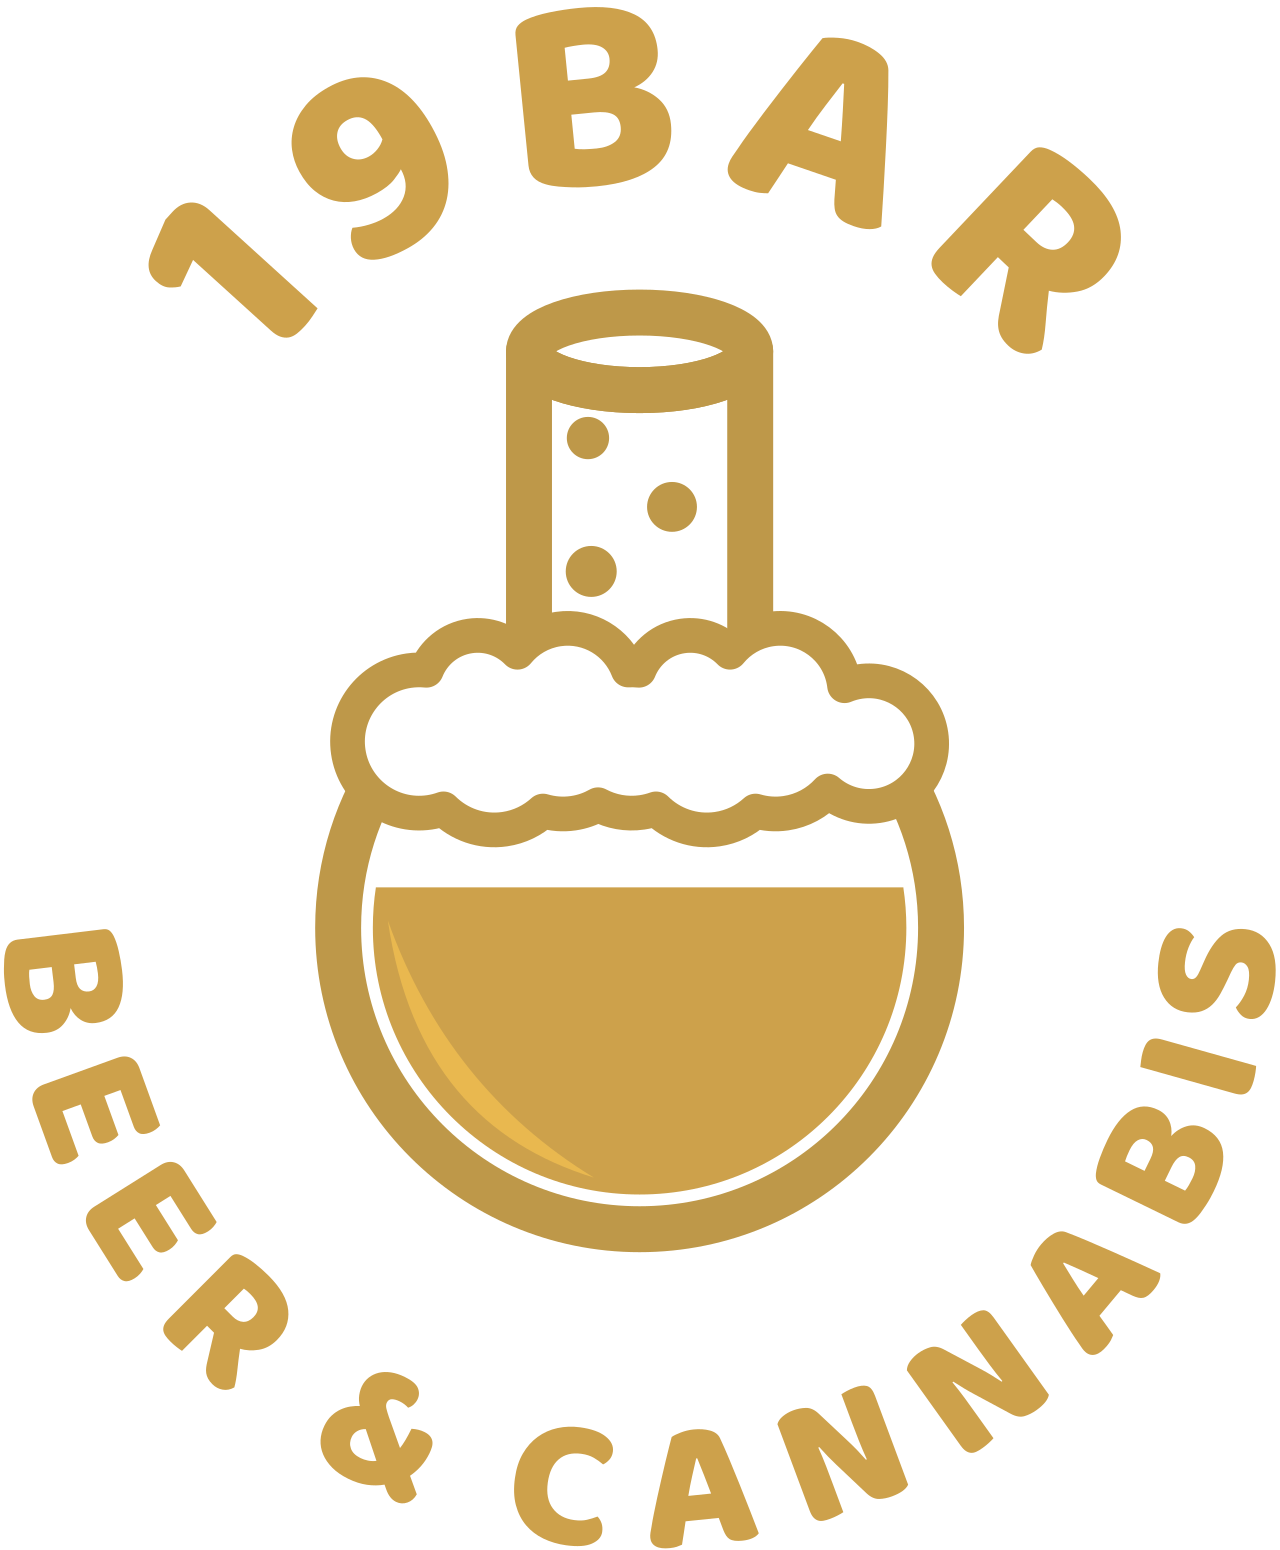 19BAR's logo